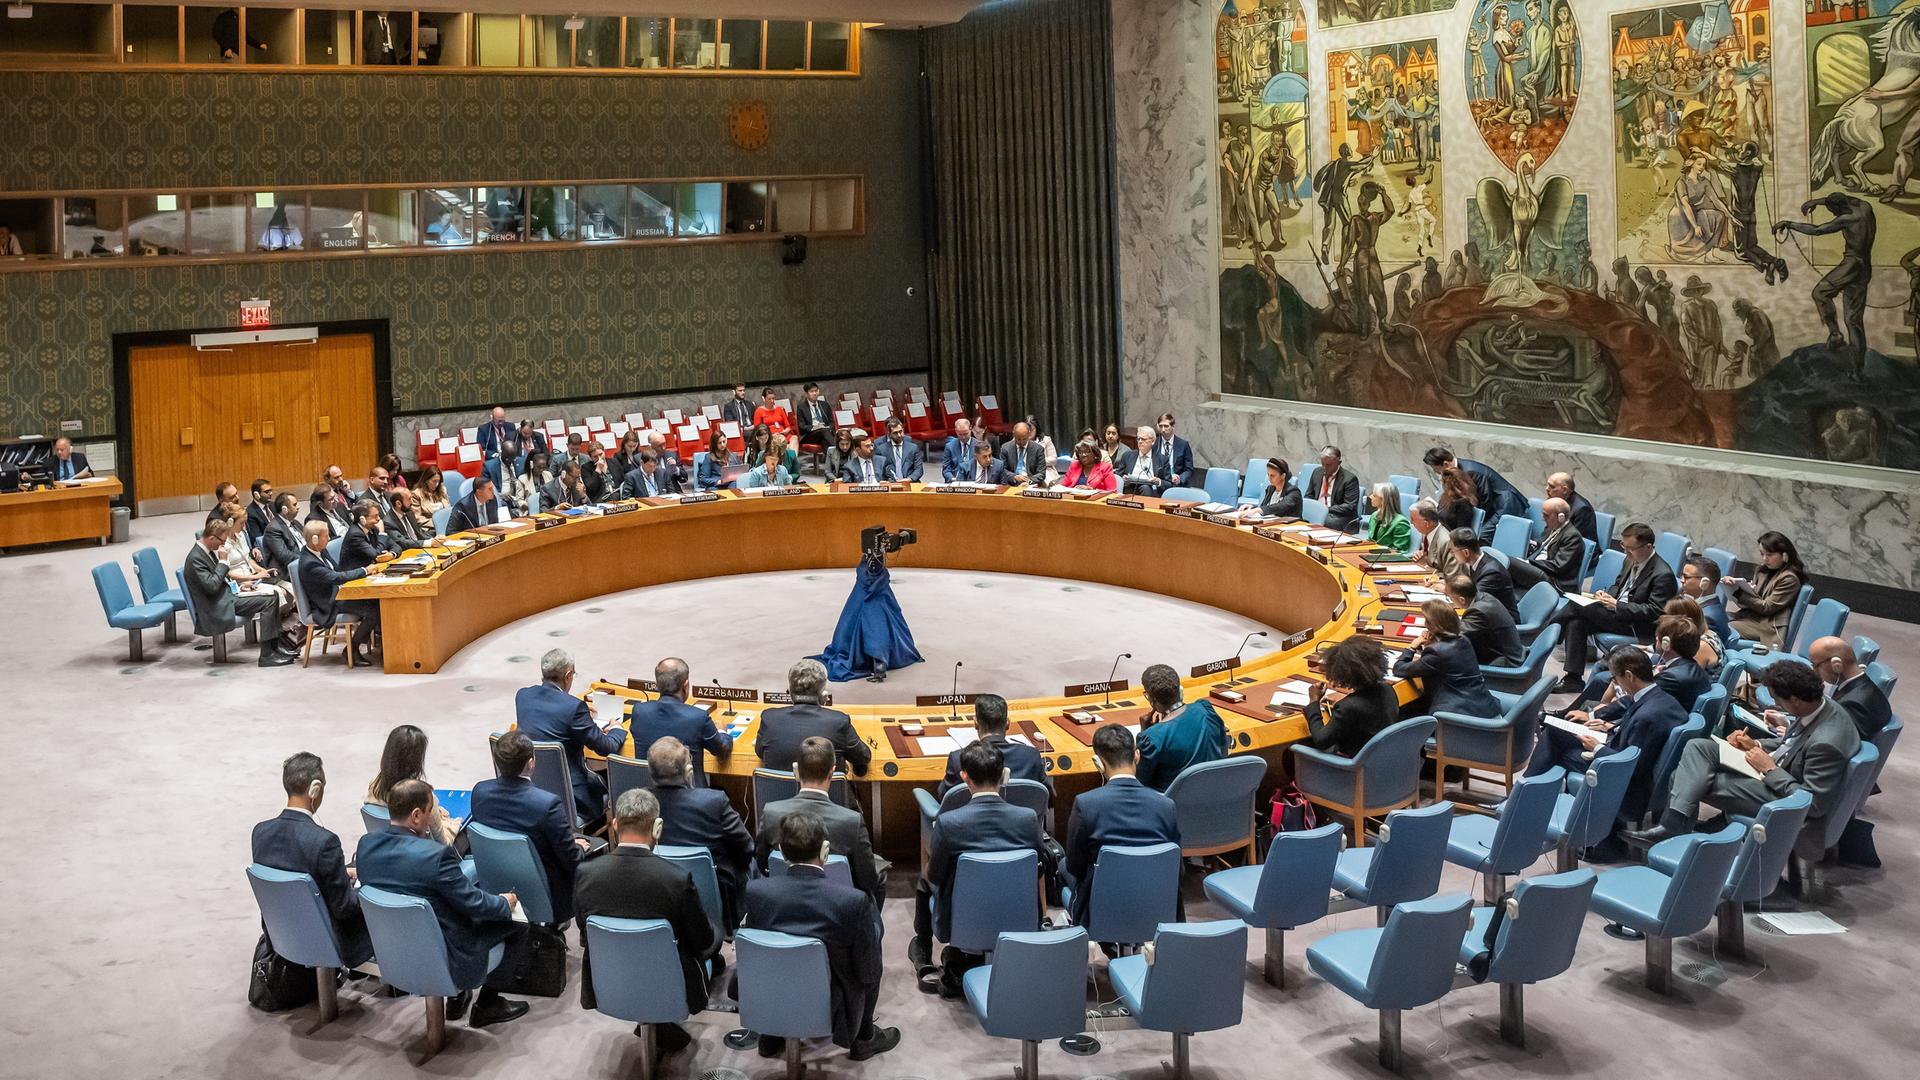 Blick in den Saal des Sicherheitsrat mit einem im Kreis angeordneten Rednertisch mit blauen Stühlen und aufwändiger Wandbemalung.